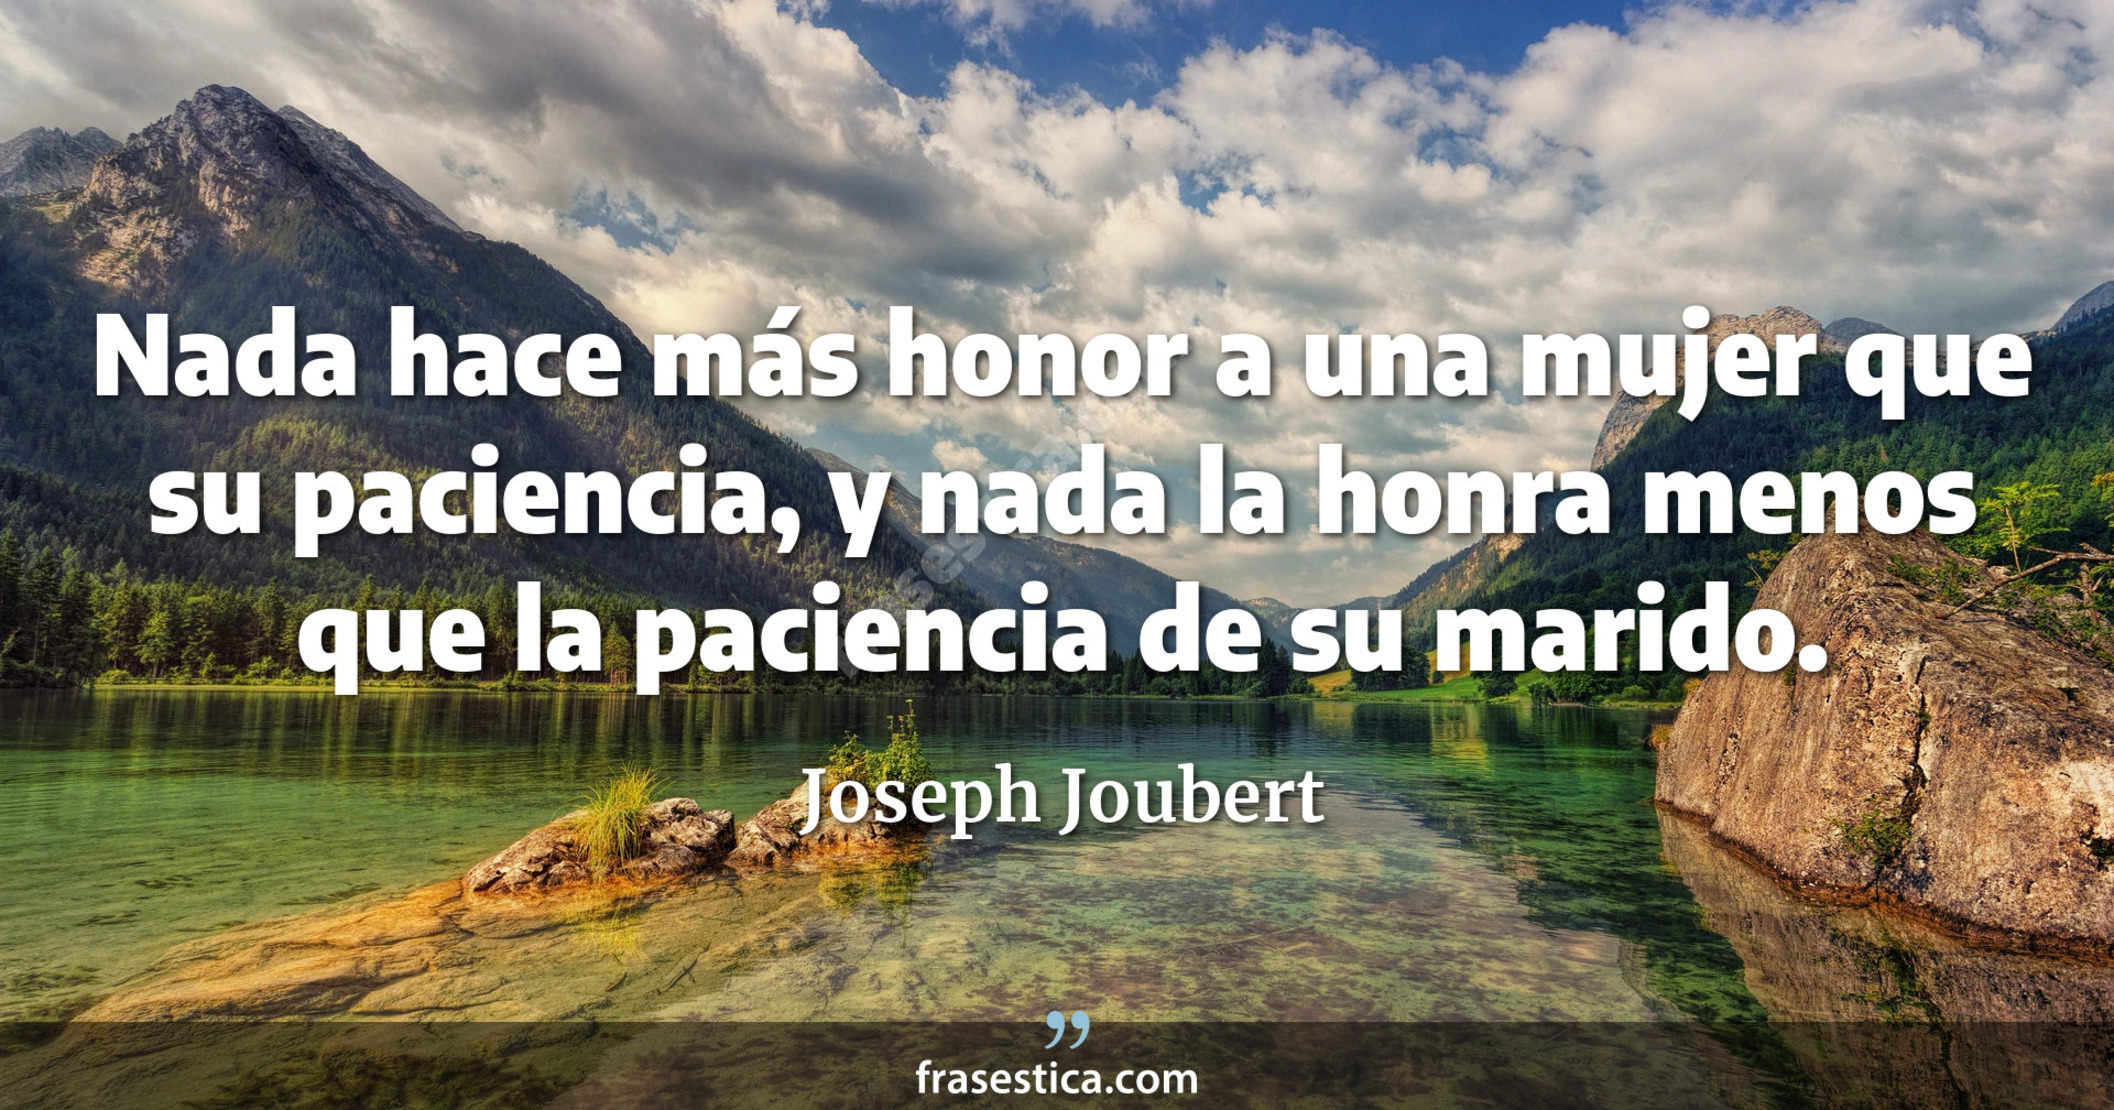 Nada hace más honor a una mujer que su paciencia, y nada la honra menos que la paciencia de su marido. - Joseph Joubert